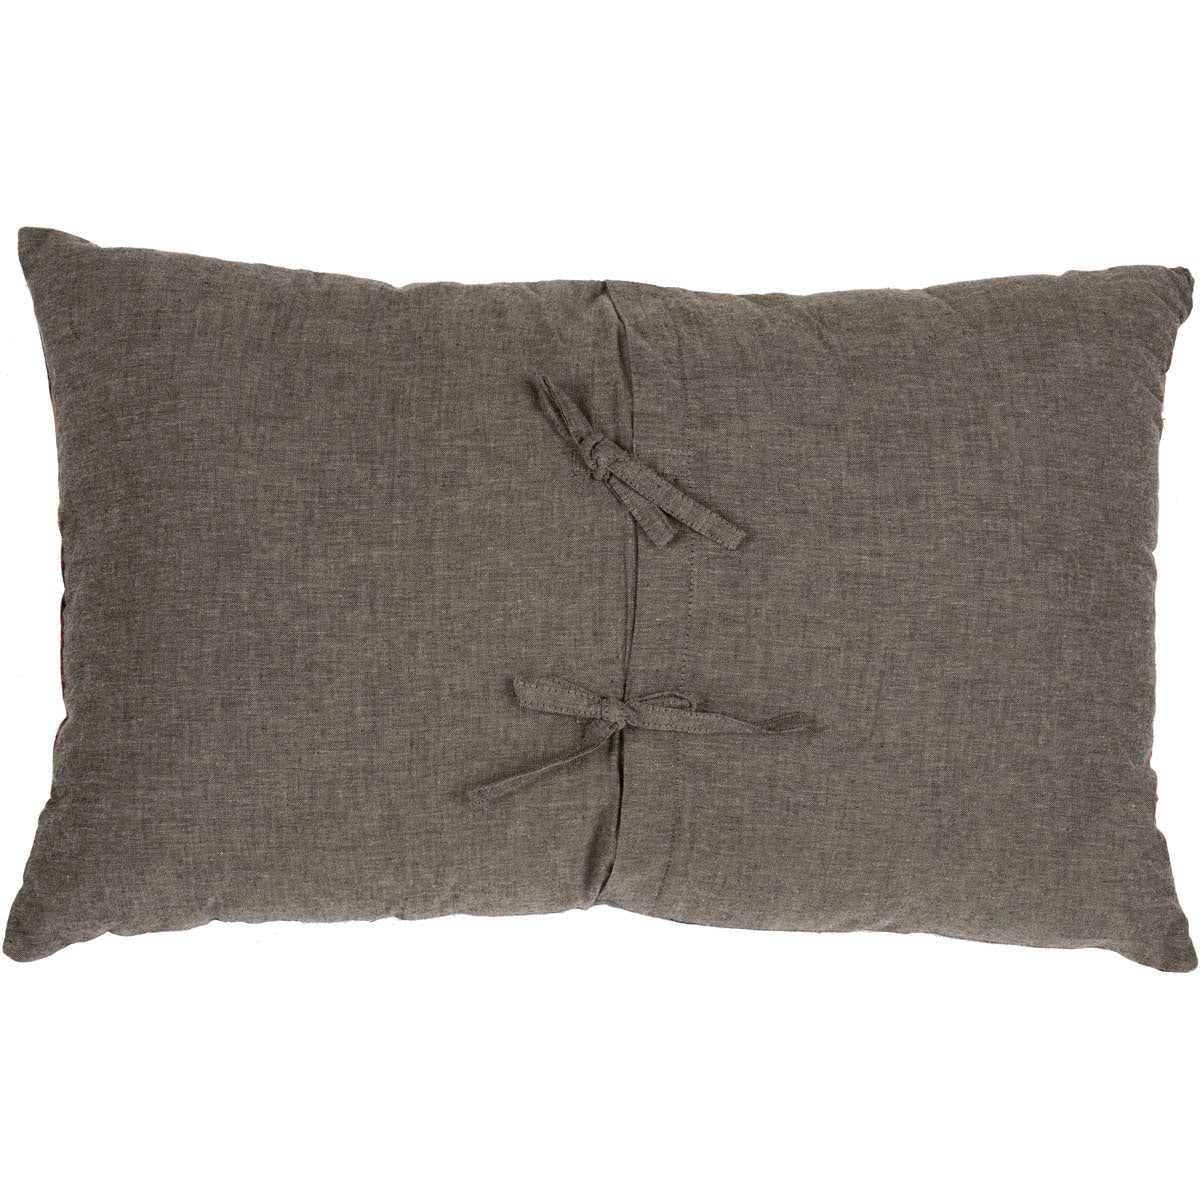 Cumberland Moose Applique Pillow 14"x22" VHC Brands